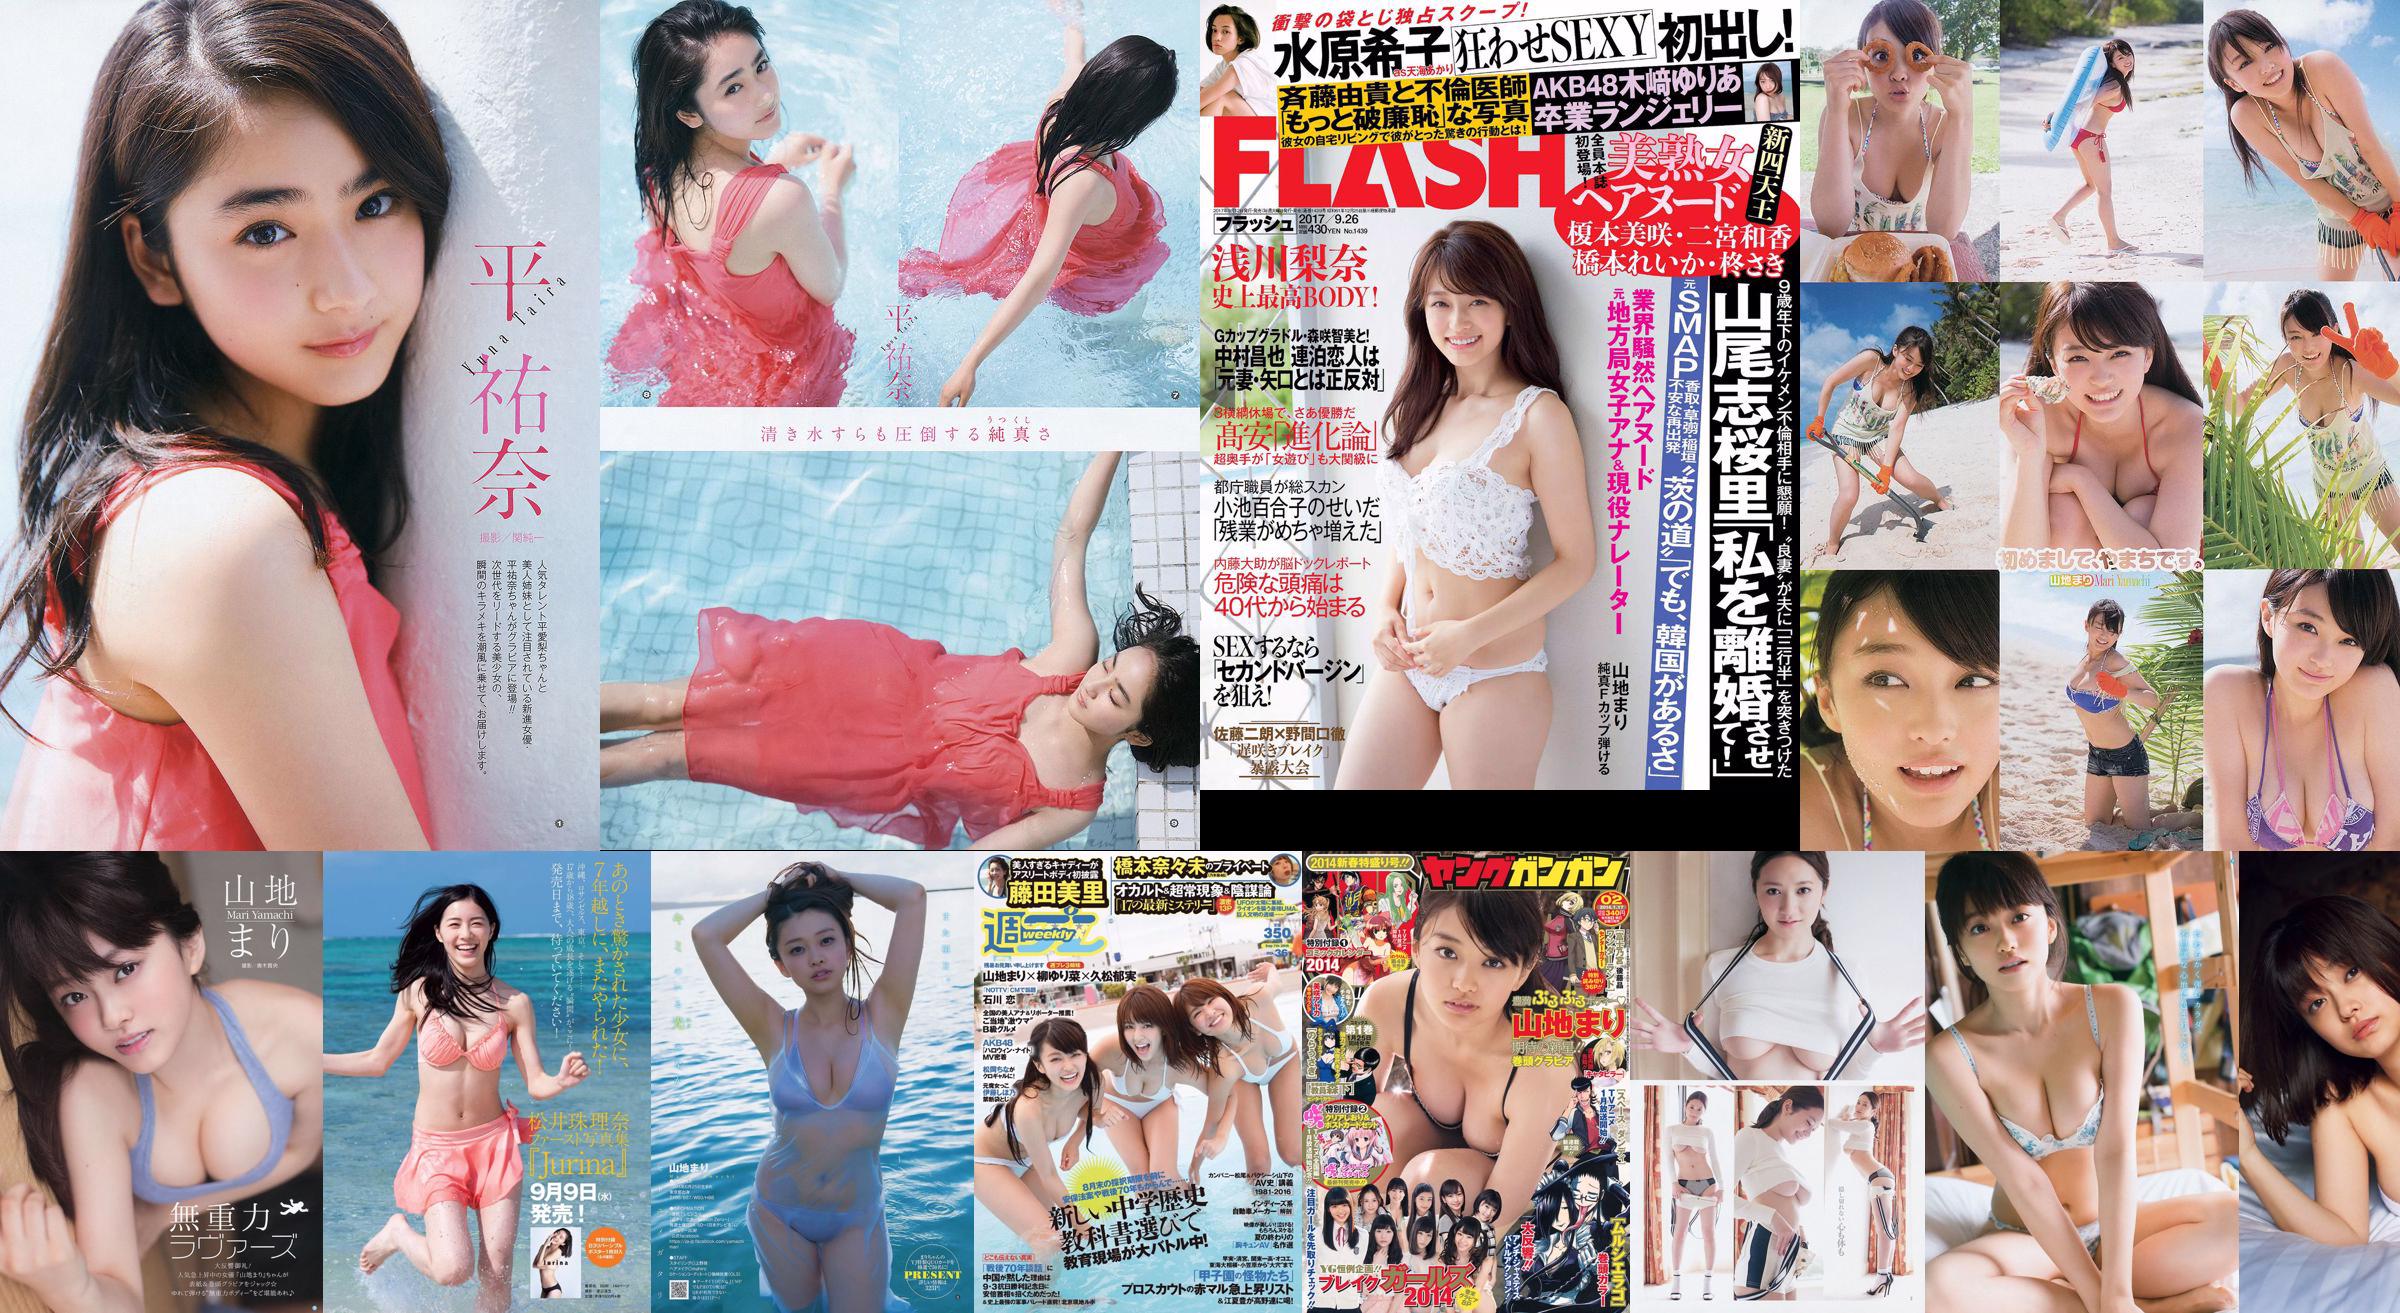 Yamachi Yuri Kodama Haruka Sugimoto Yumi Noodle Girl Nao Oo Aoyama Kana Fujita Yoshikawa Ichikawa [Weekly Playboy] 2015 No.10 Photo Magazine No.f7065d Page 1